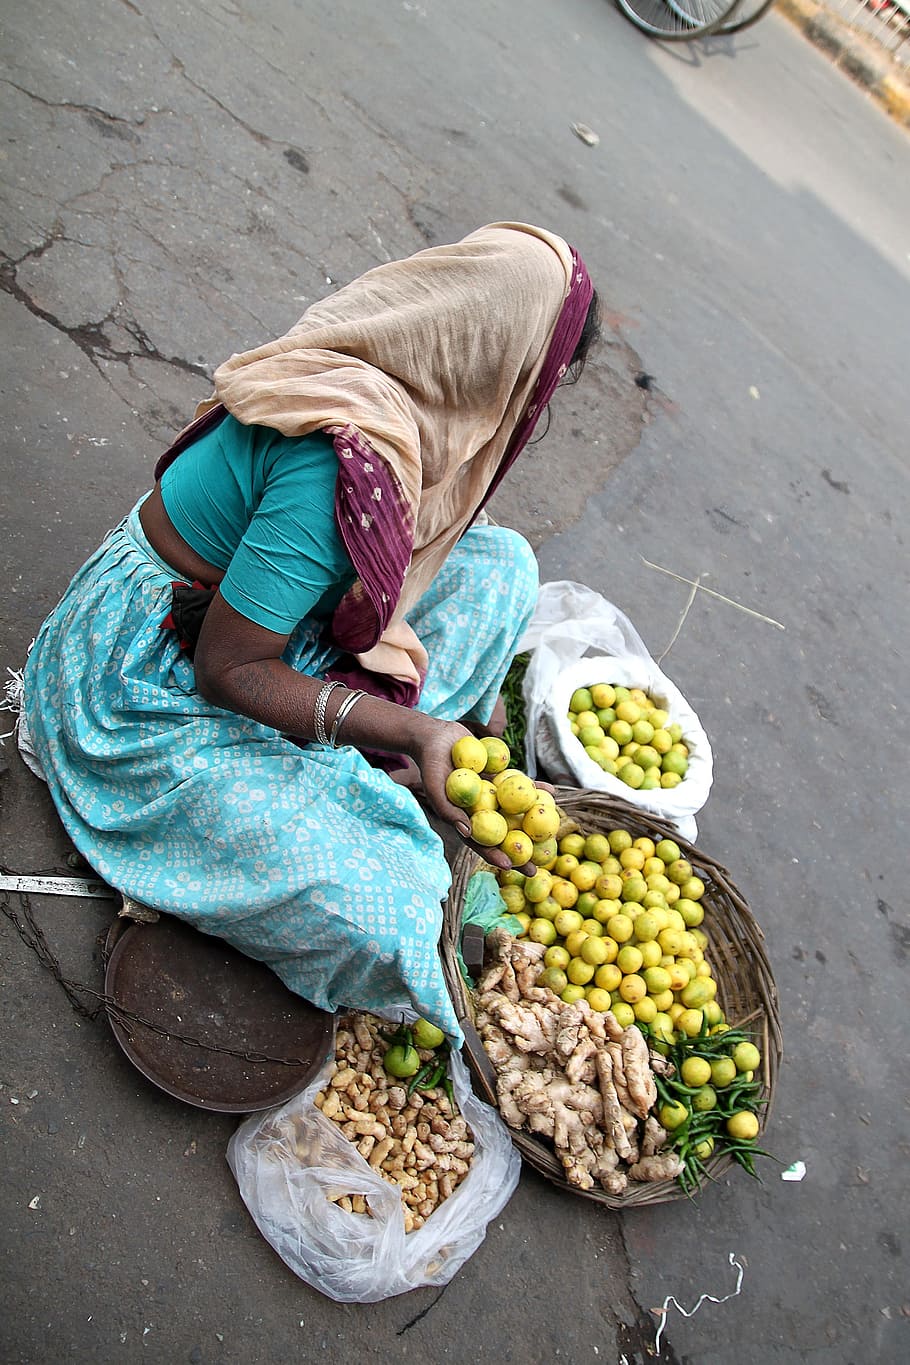 hawker, street vendor, seller, woman, india, new delhi, selling, vegetable, vendor, market